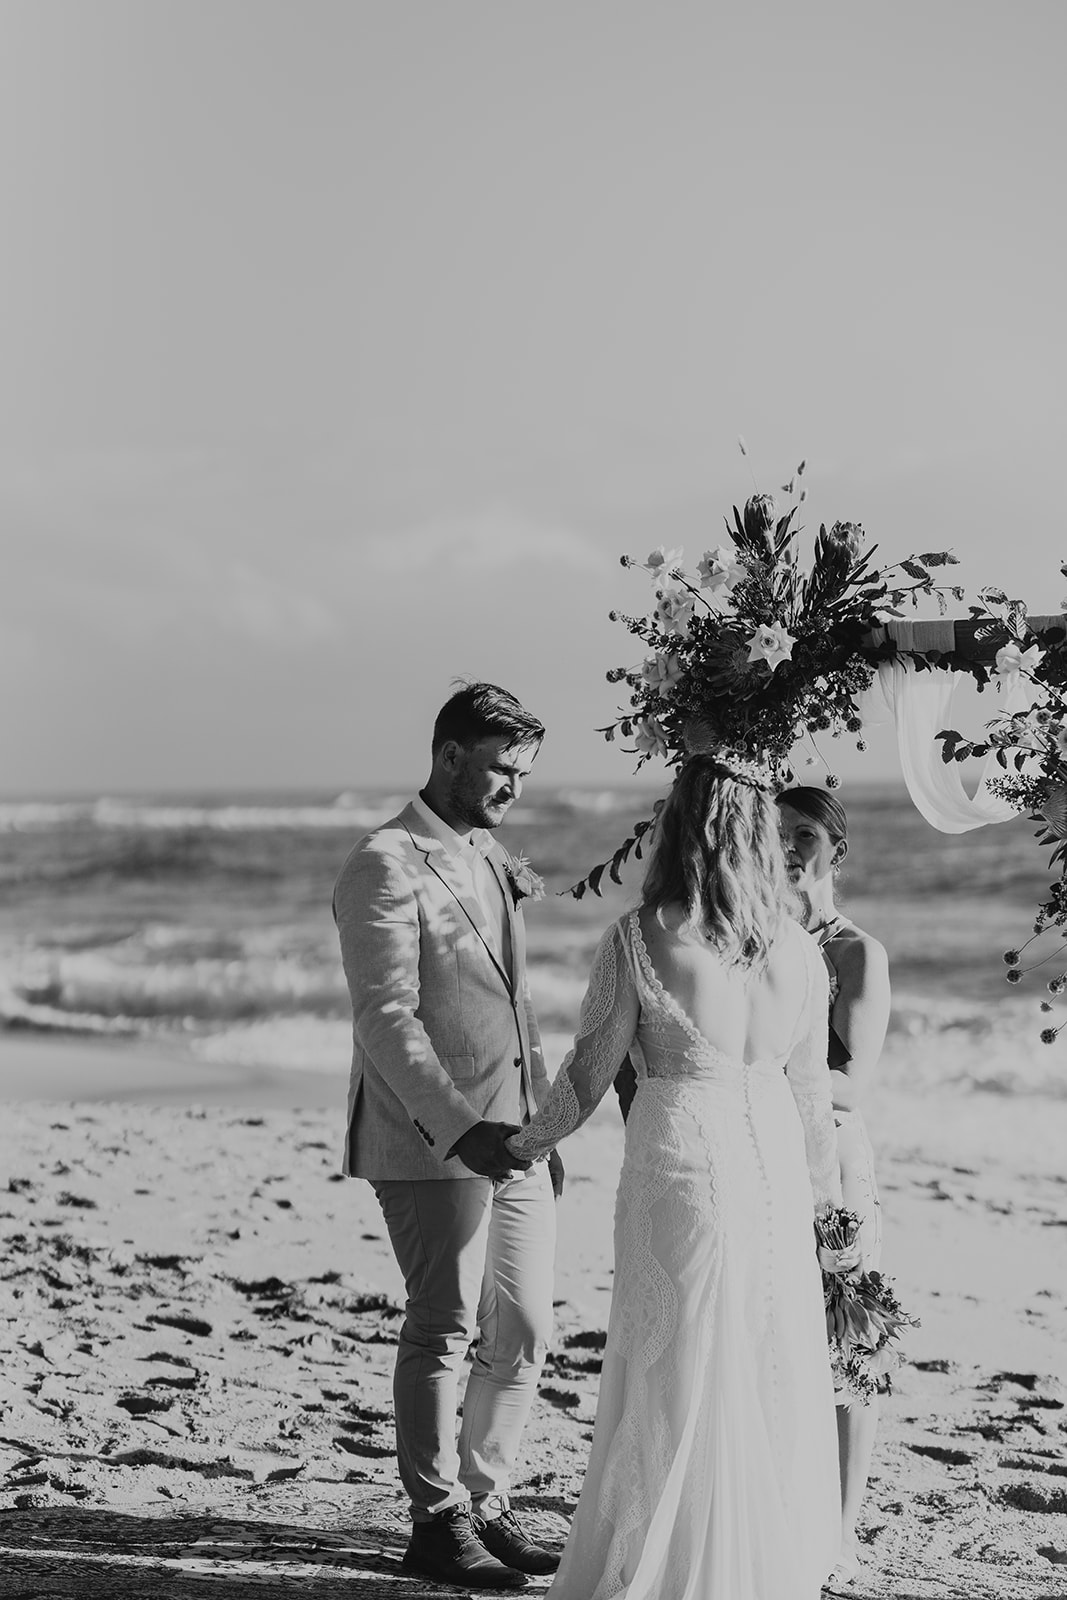 images by angela cannavo photography sunshine coast weddings